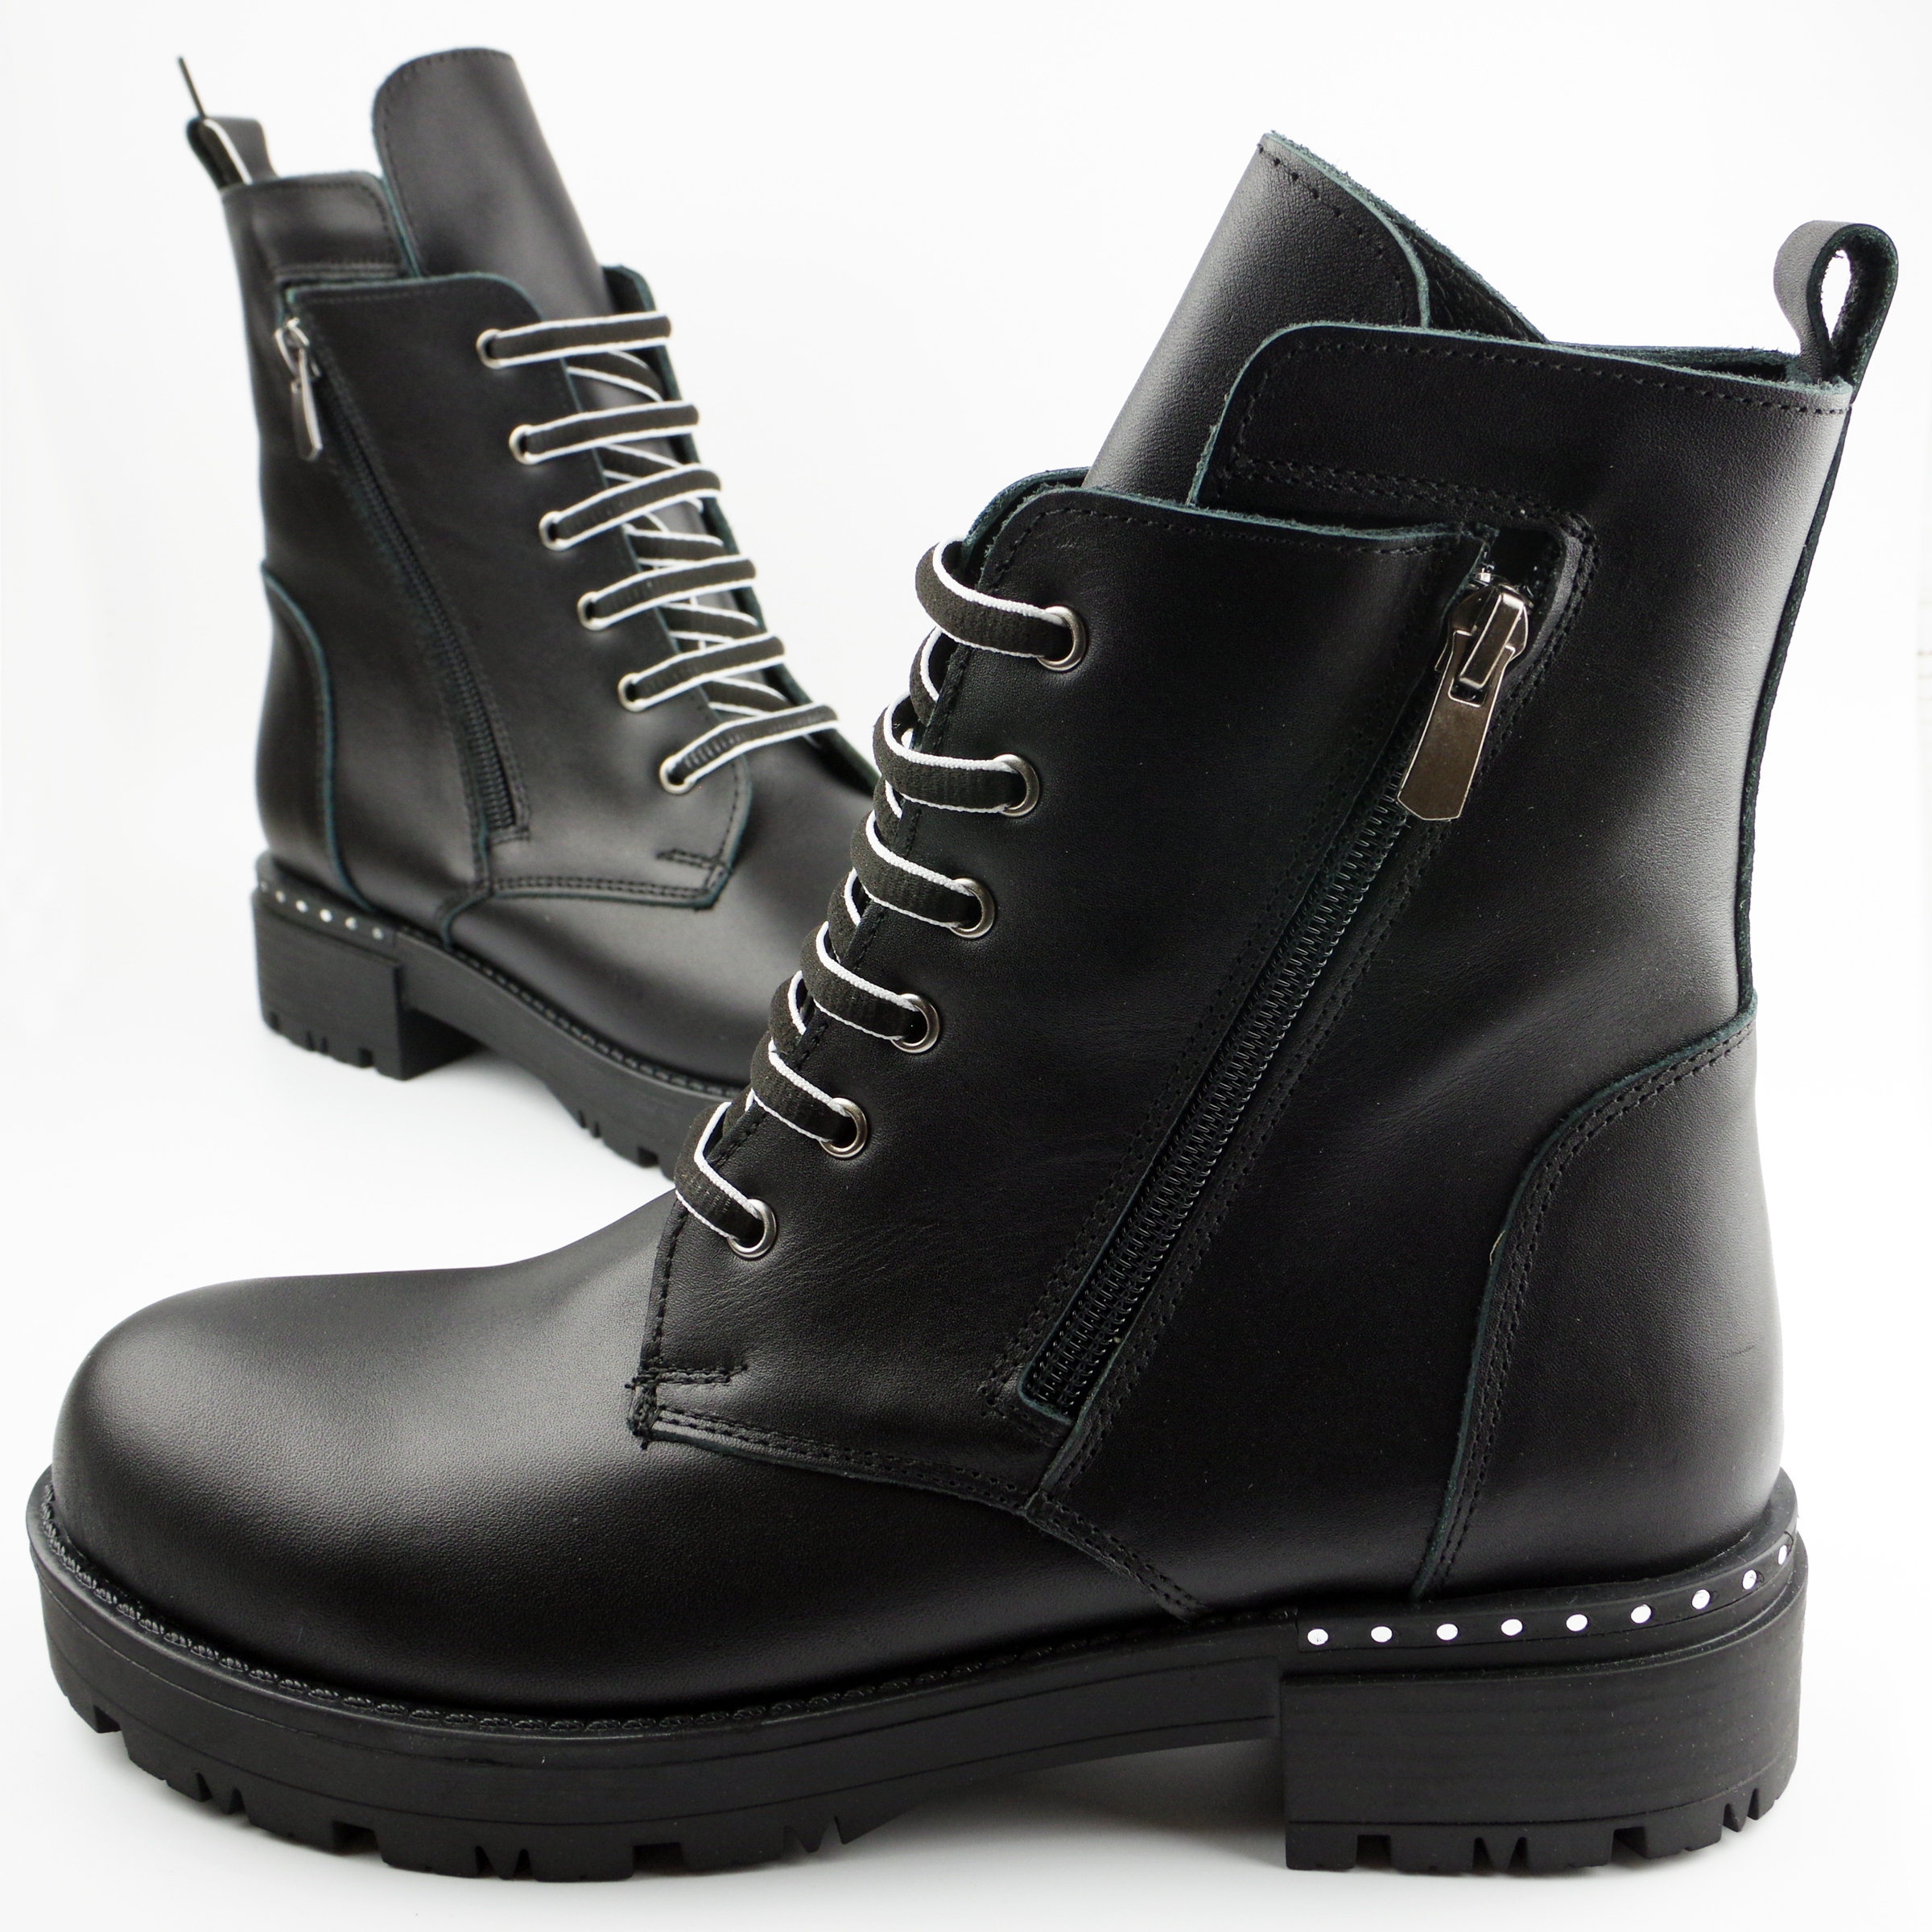 Демисезонные ботинки для подростков (2125) материал Натуральная кожа, цвет Черный  для девочки 37-39 размеры – Sole Kids. Фото 3